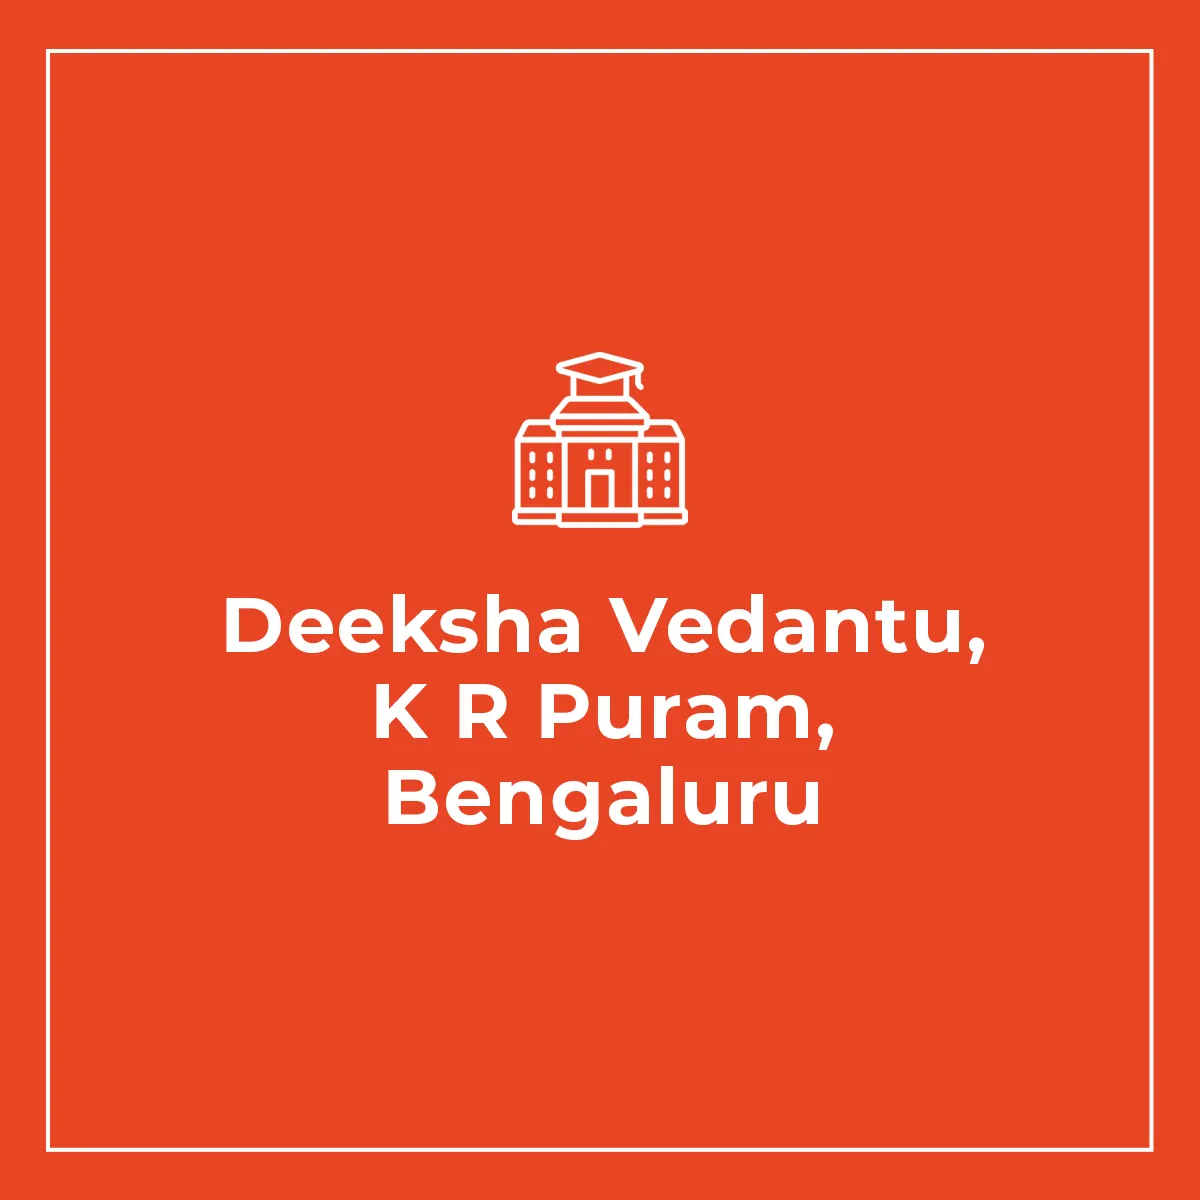 Deeksha Vedantu K R Puram, Bengaluru